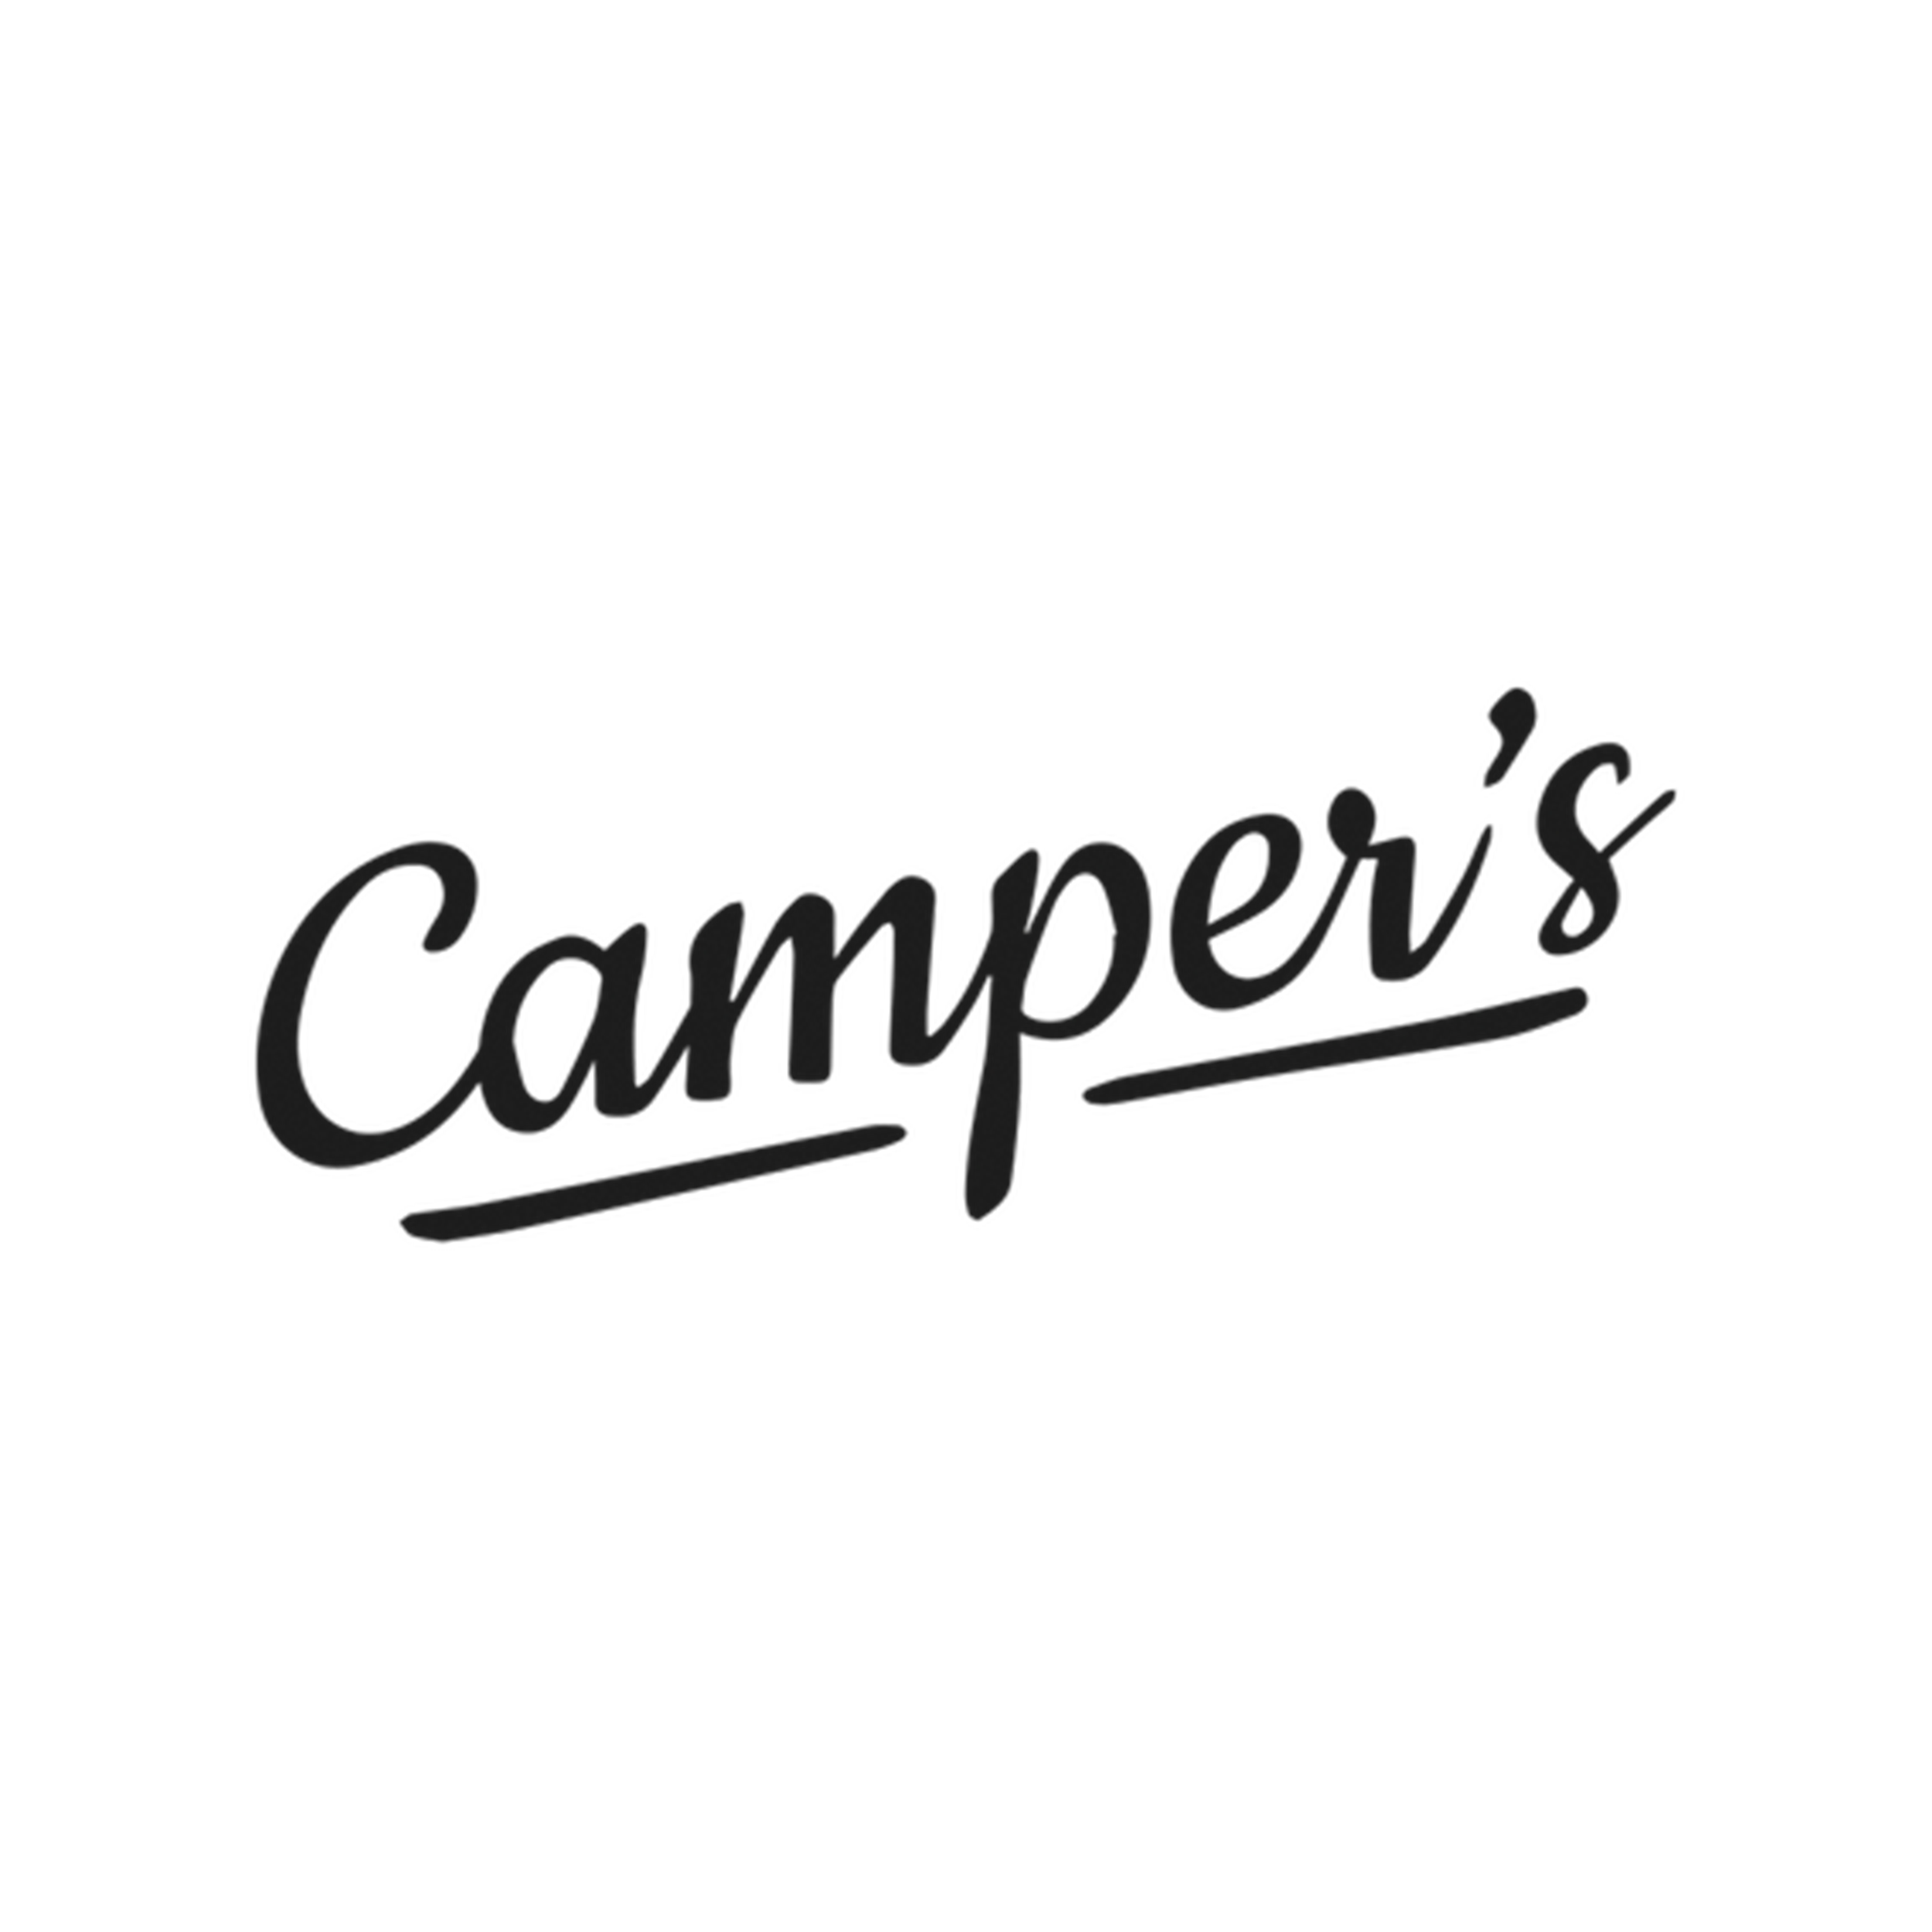 campers logo